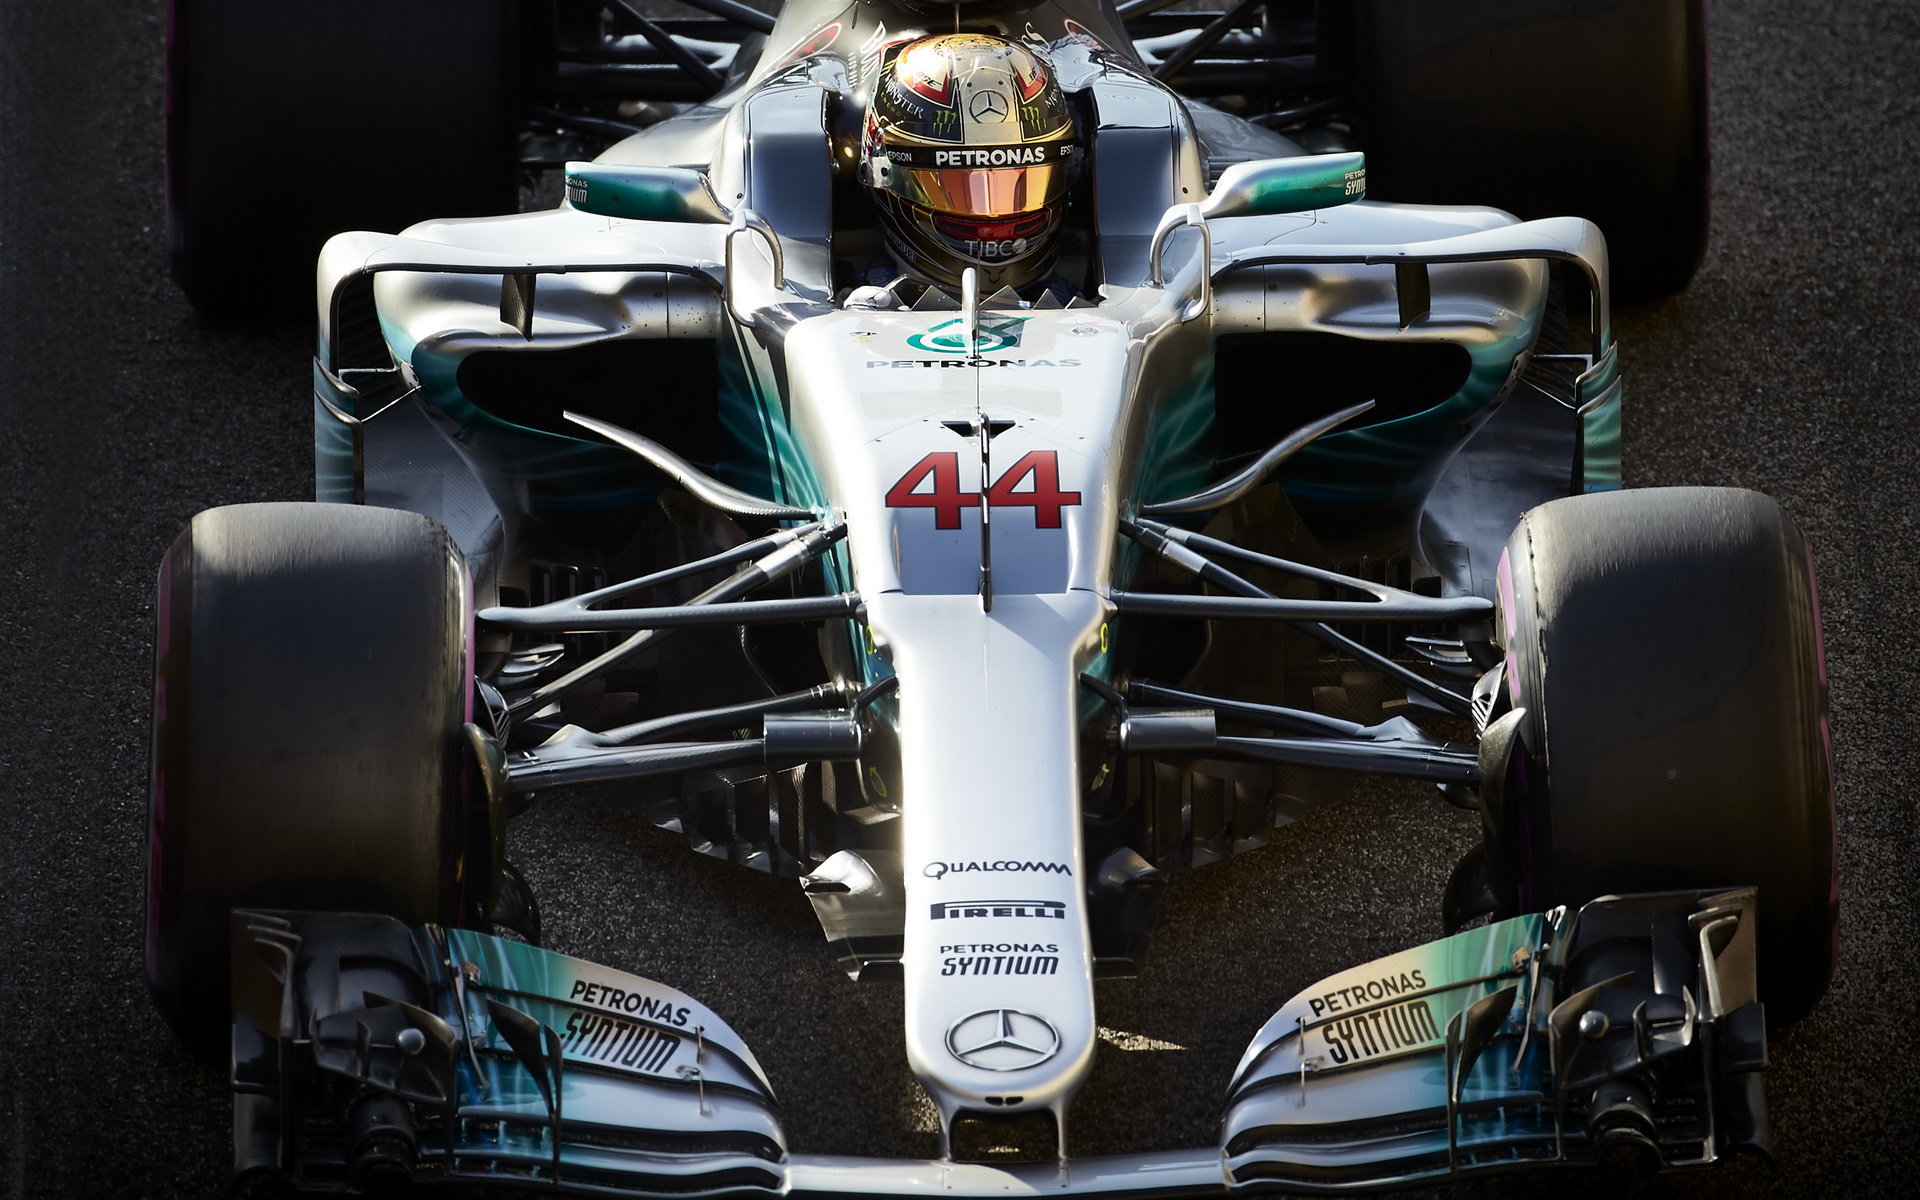 Auto Mercedesu pro sezonu 2017 nebylo z důvodu nejasného směru dalšího vývoje pravidel aerodynamicky optimální